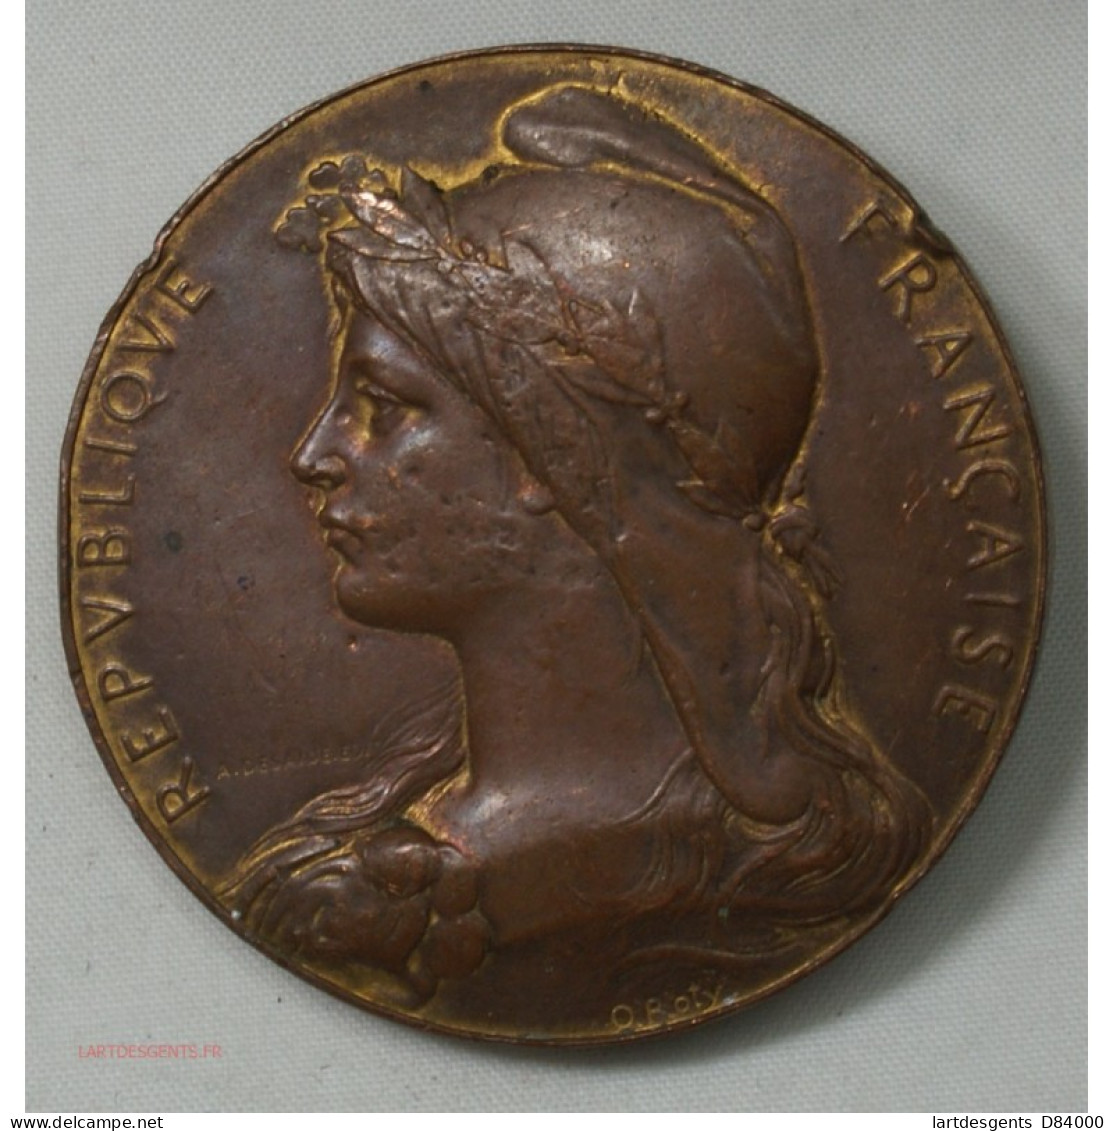 Médaille Uniface République Française Par O. Roty - Firma's